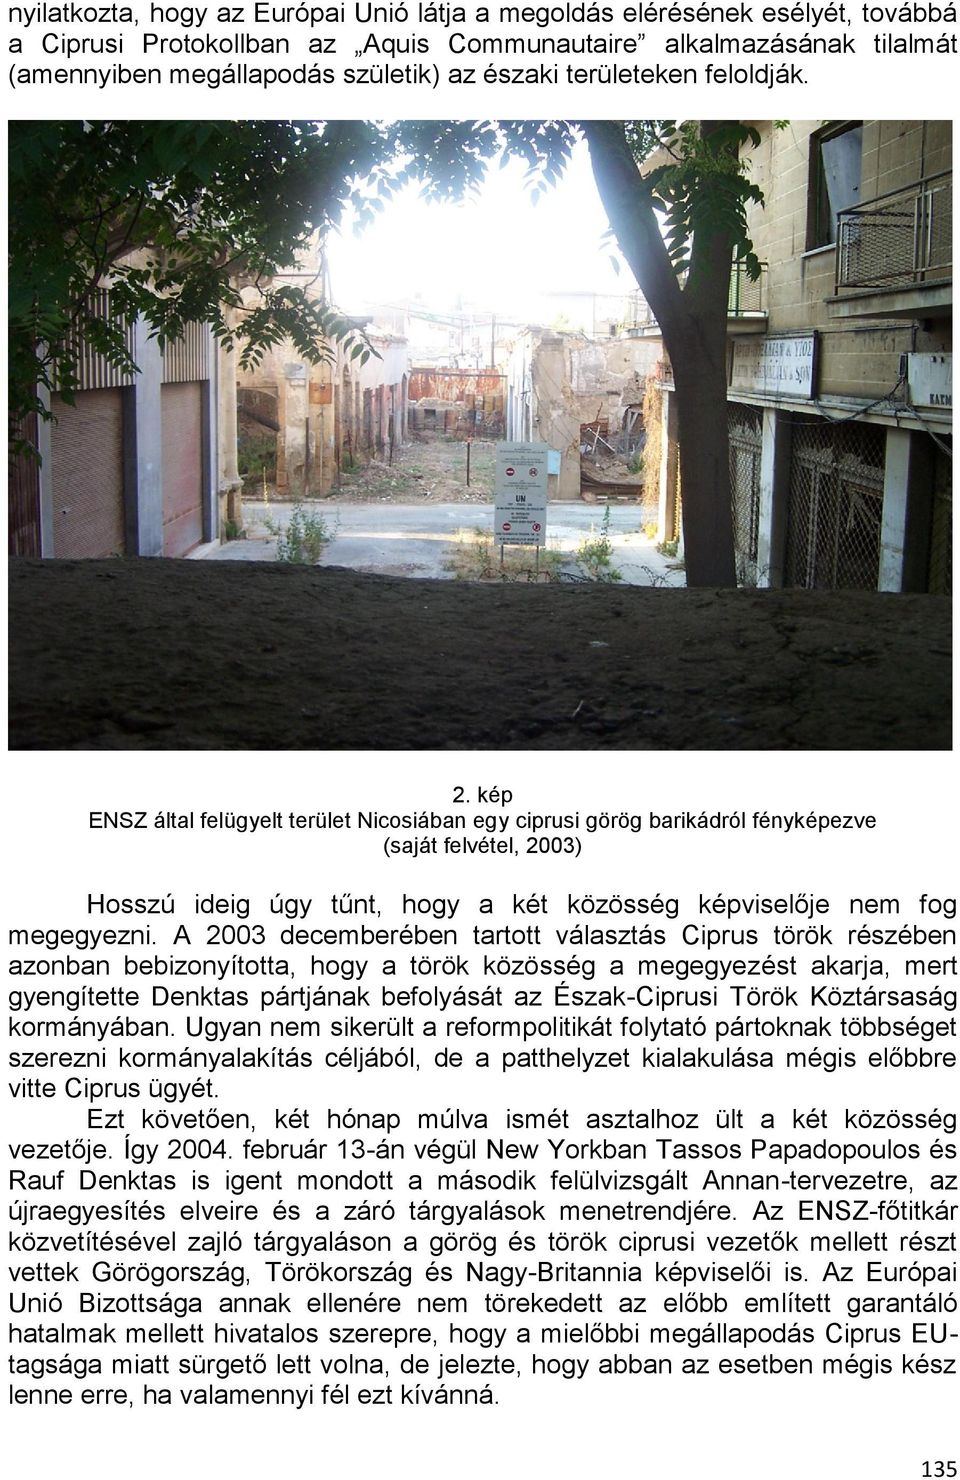 kép ENSZ által felügyelt terület Nicosiában egy ciprusi görög barikádról fényképezve (saját felvétel, 2003) Hosszú ideig úgy tűnt, hogy a két közösség képviselője nem fog megegyezni.